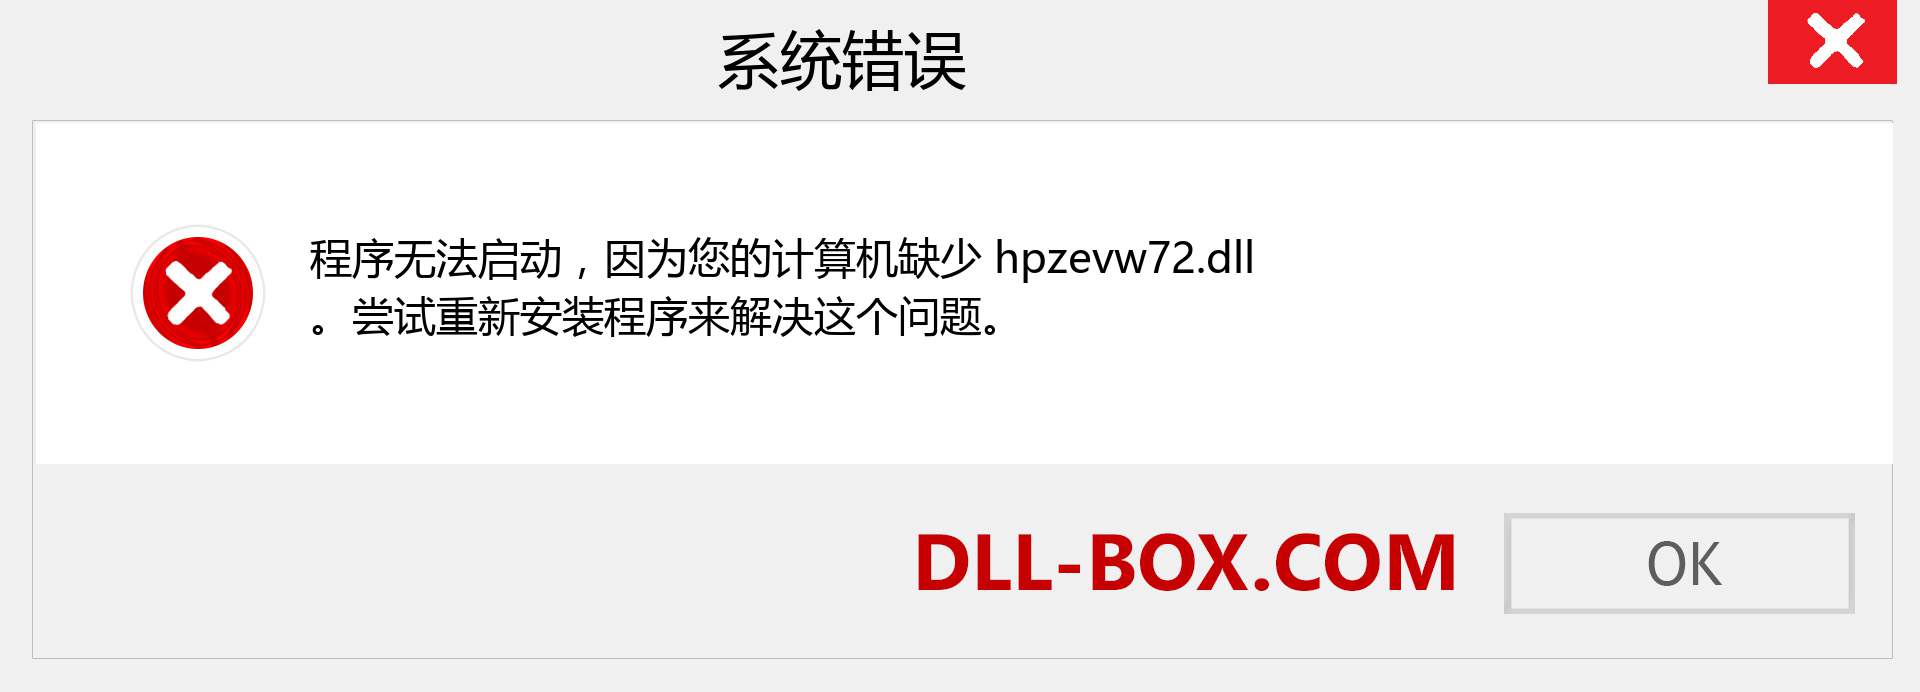 hpzevw72.dll 文件丢失？。 适用于 Windows 7、8、10 的下载 - 修复 Windows、照片、图像上的 hpzevw72 dll 丢失错误